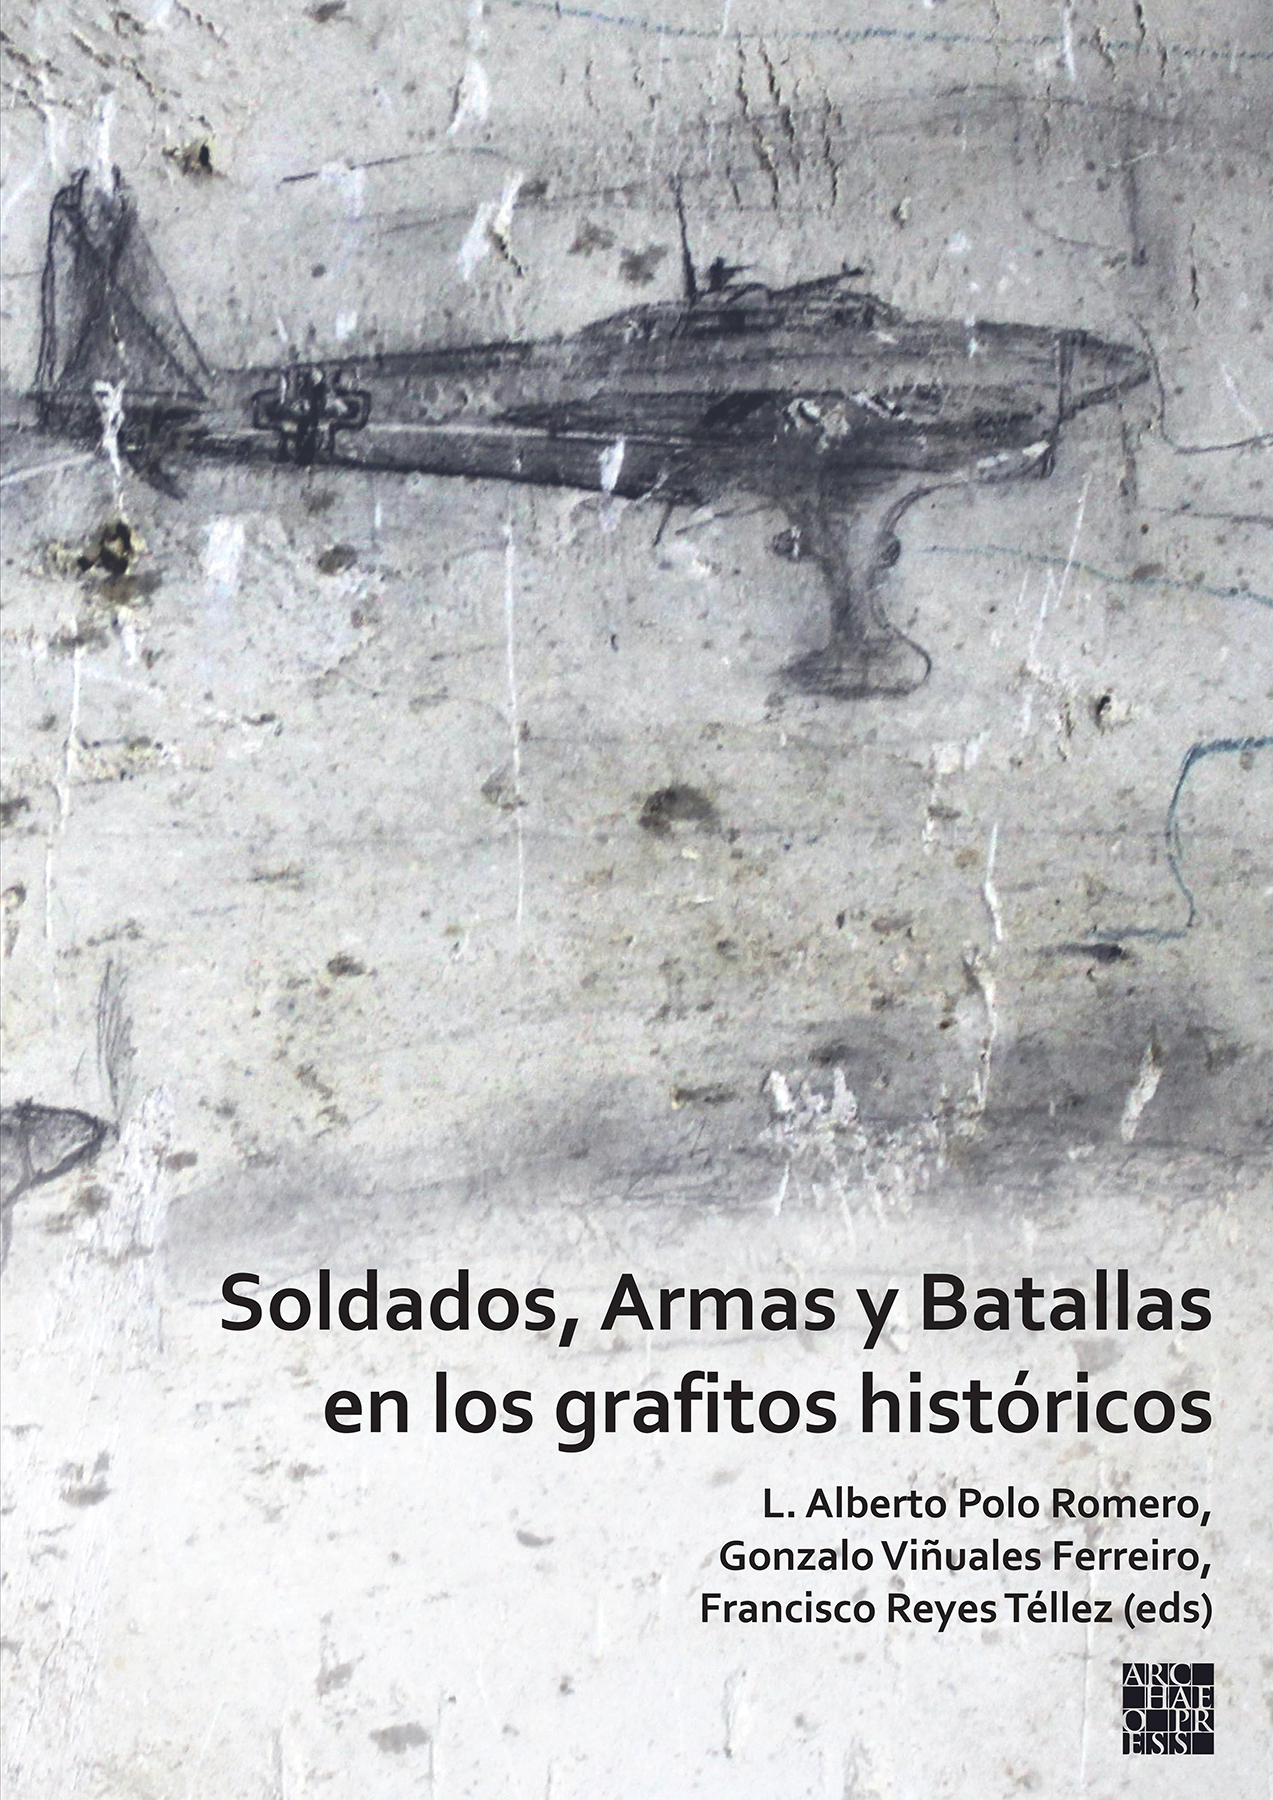 Imagen de portada del libro Soldados, armas y batallas en los grafitos históricos